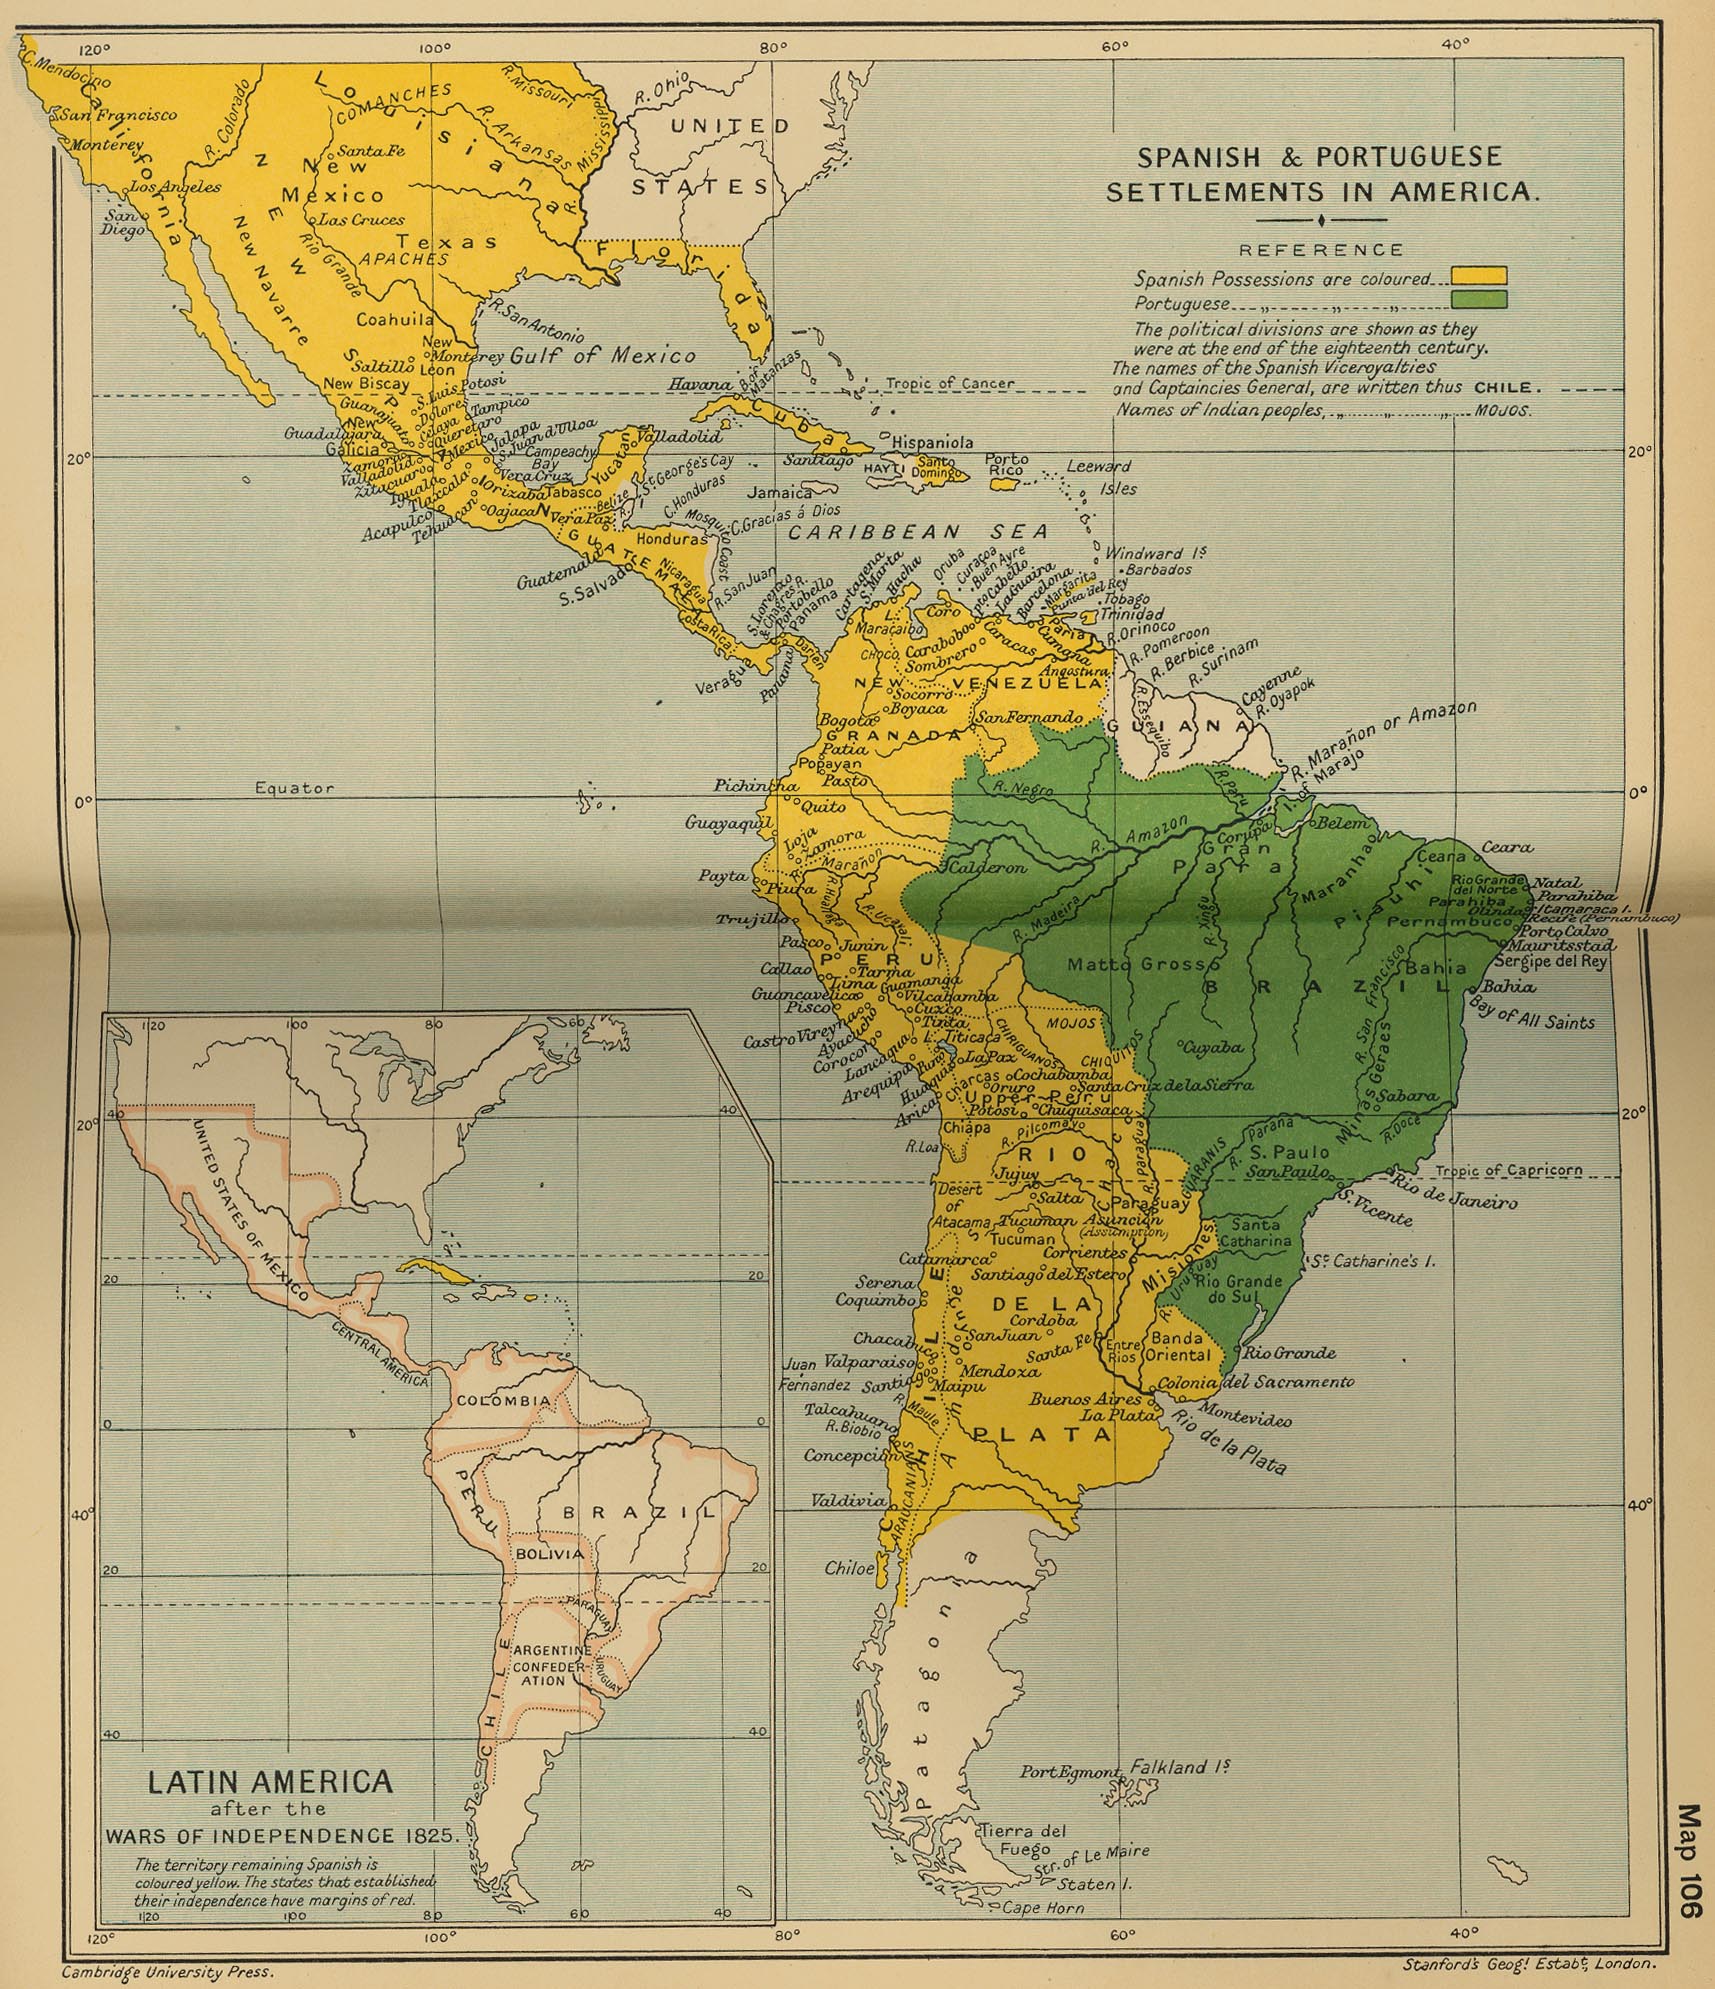 Asentamientos español y portugués en América, final del siglo XVIII